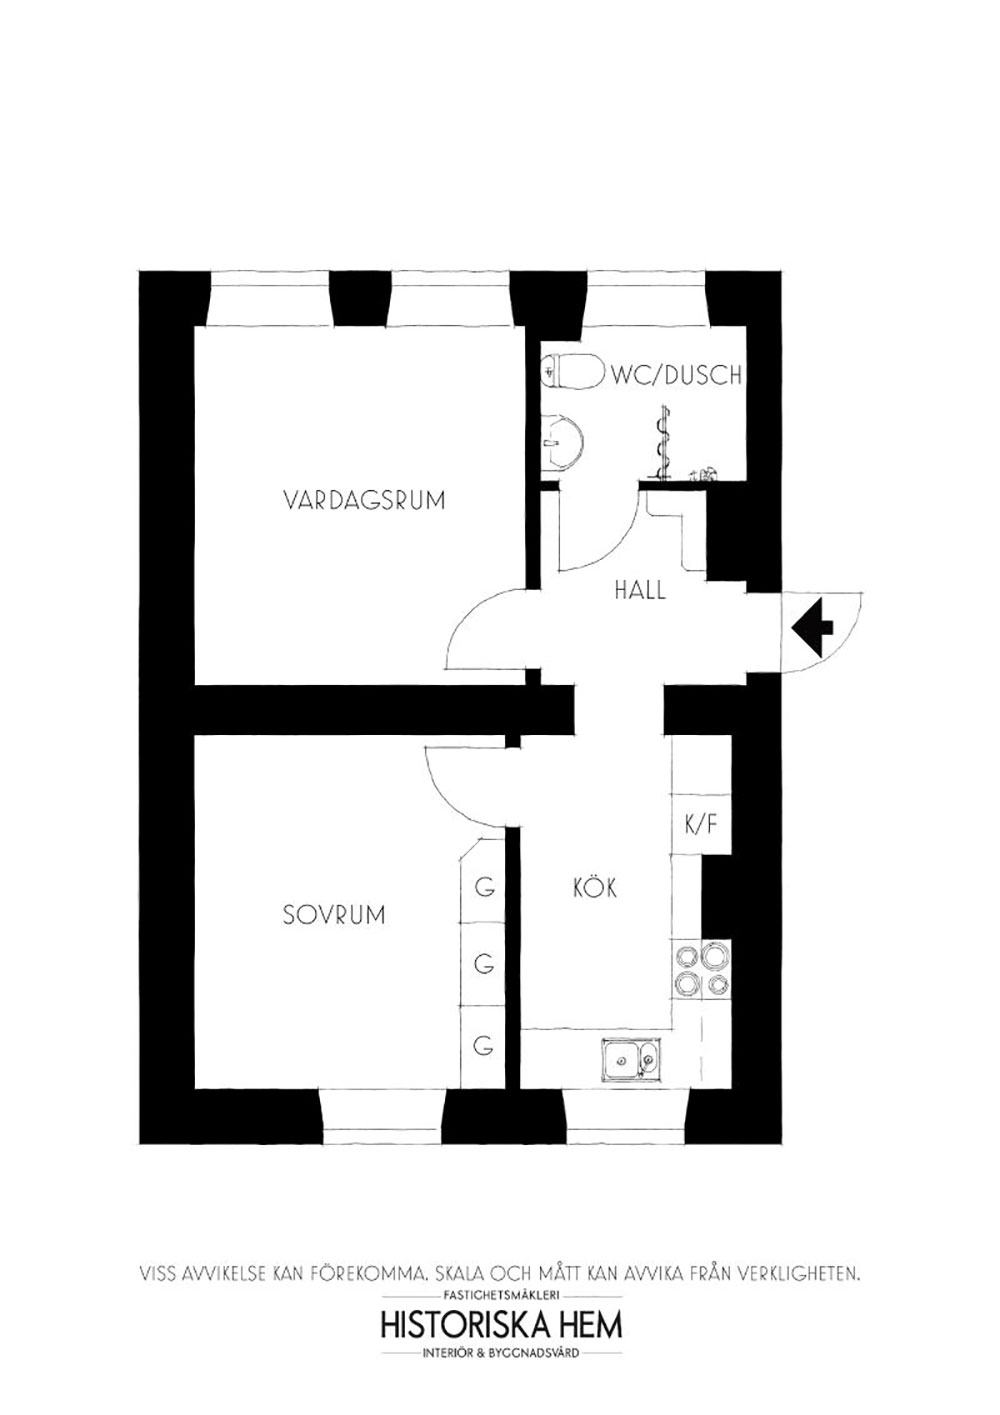 Маленькая квартира с ностальгическими нотками в декоре (40 кв. м)